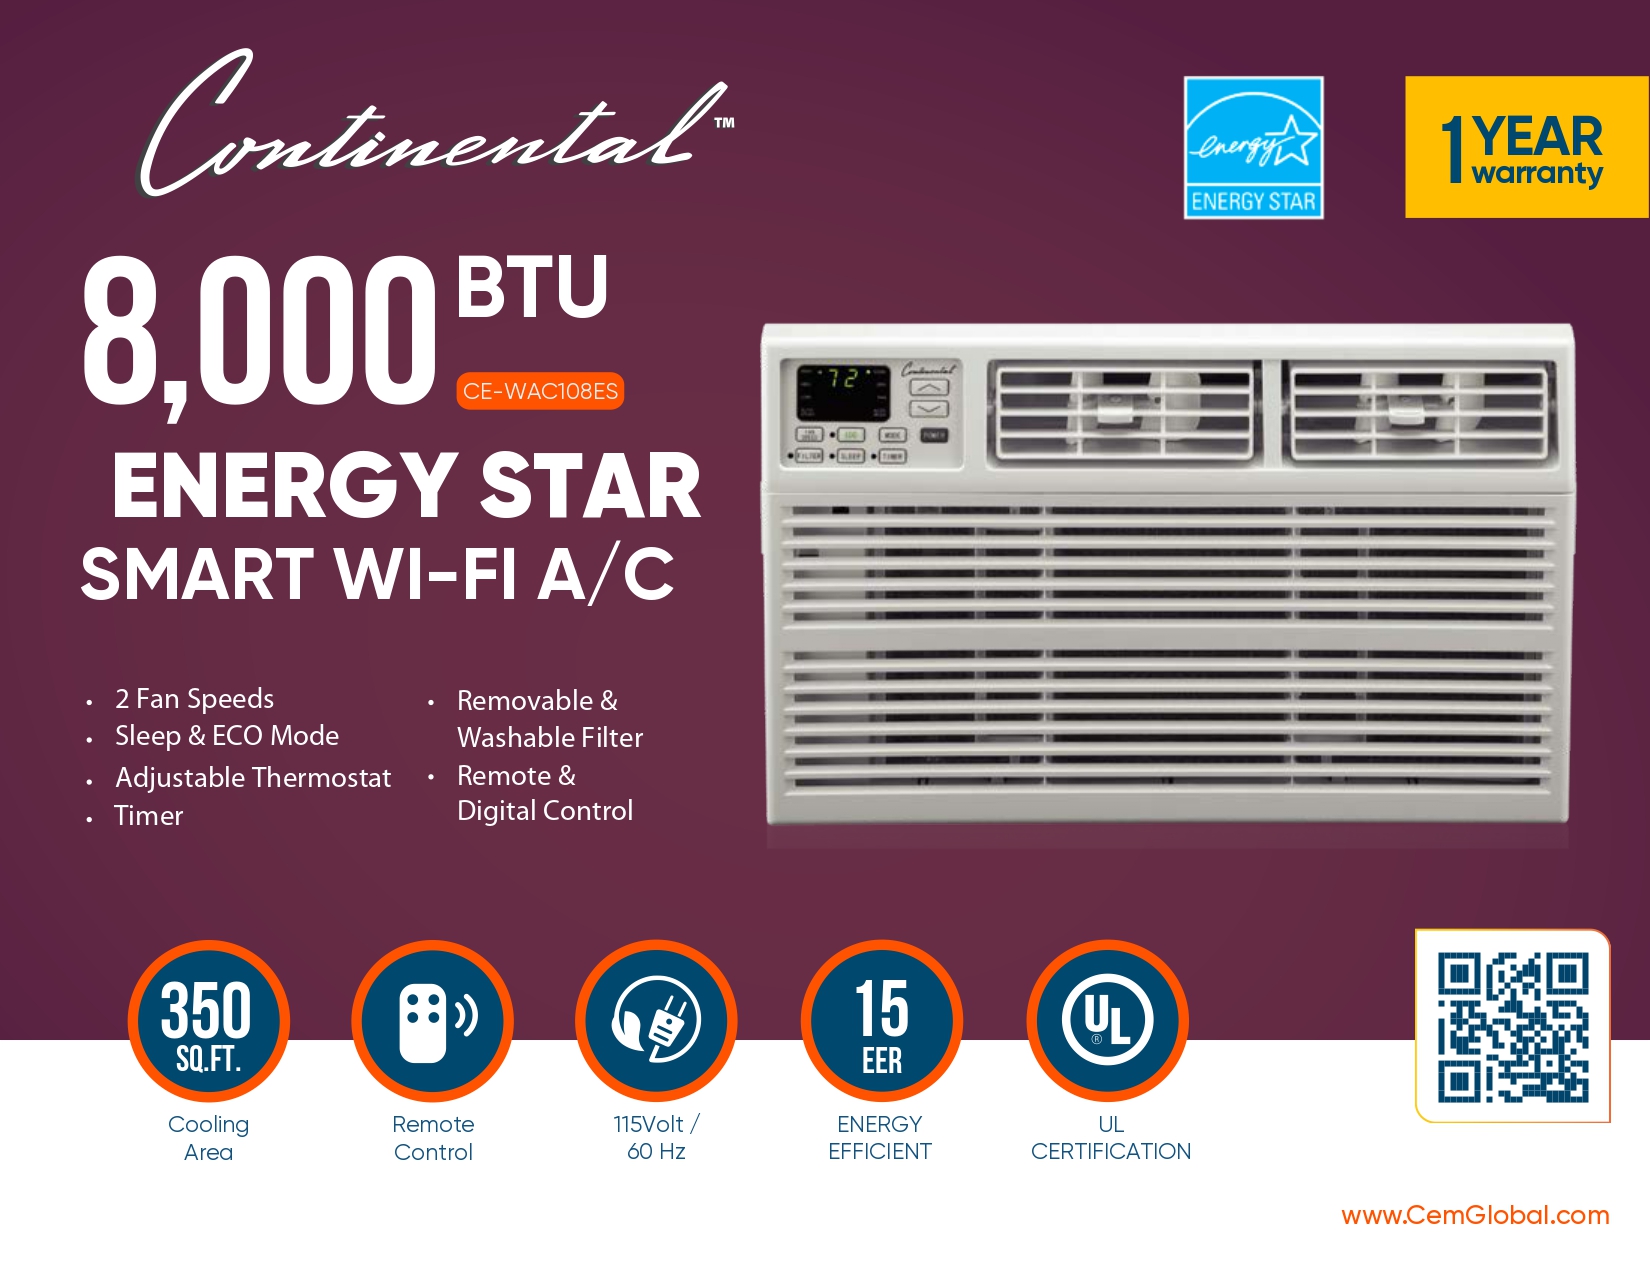 8,000 BTU ENERGY STAR SMART WI-FI A/C